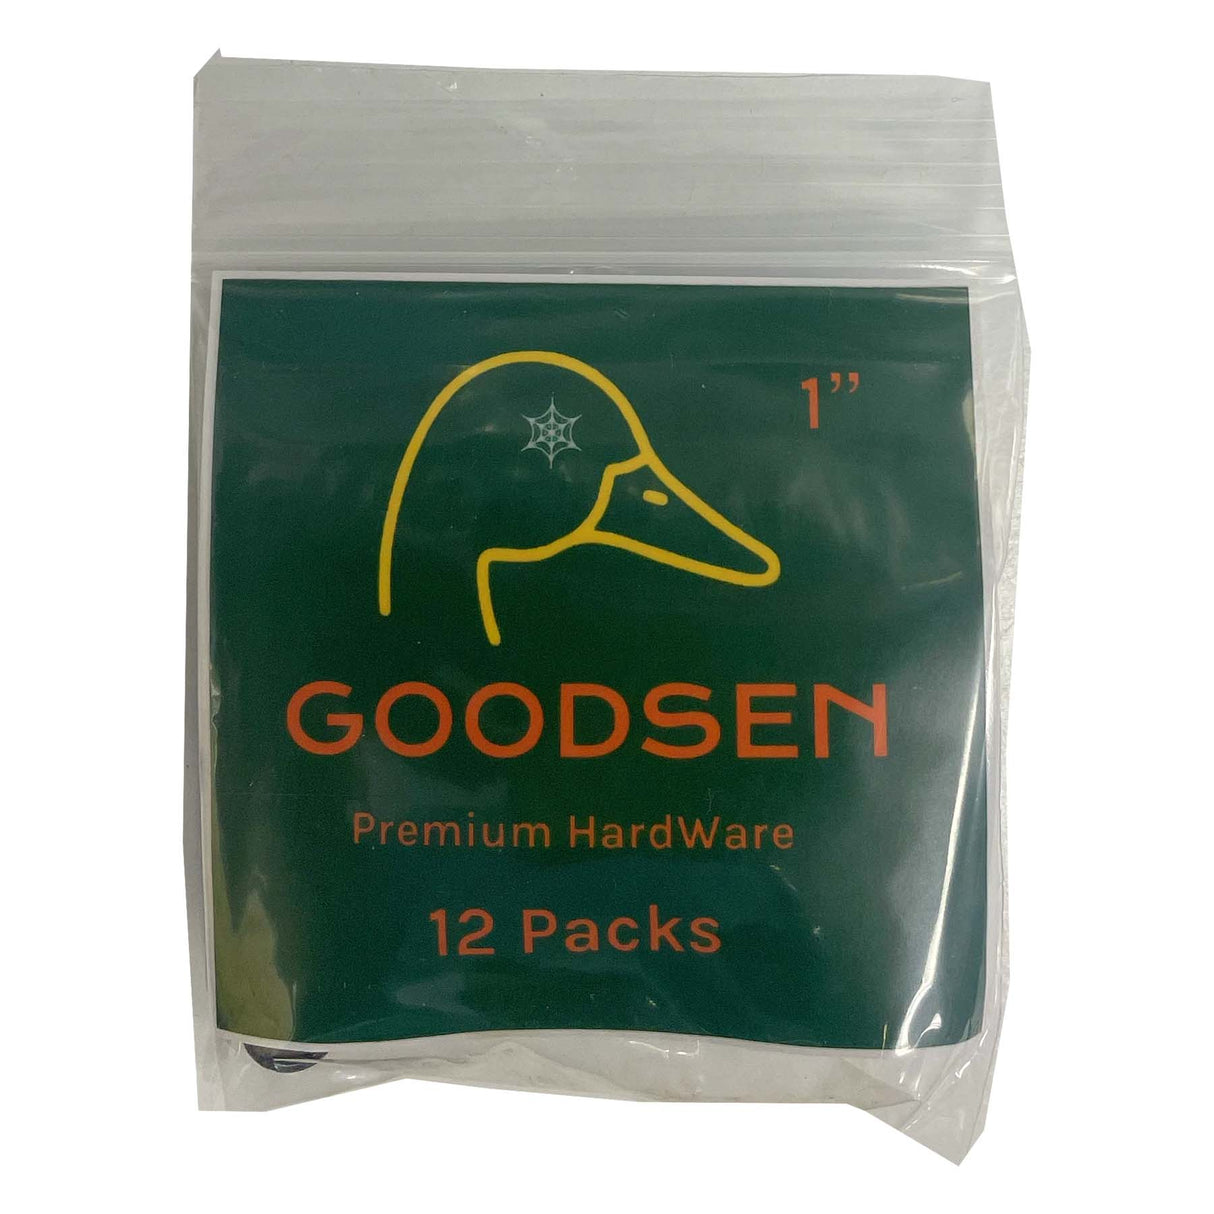 Goodsen 12 Pack 1" Phillips Hardware